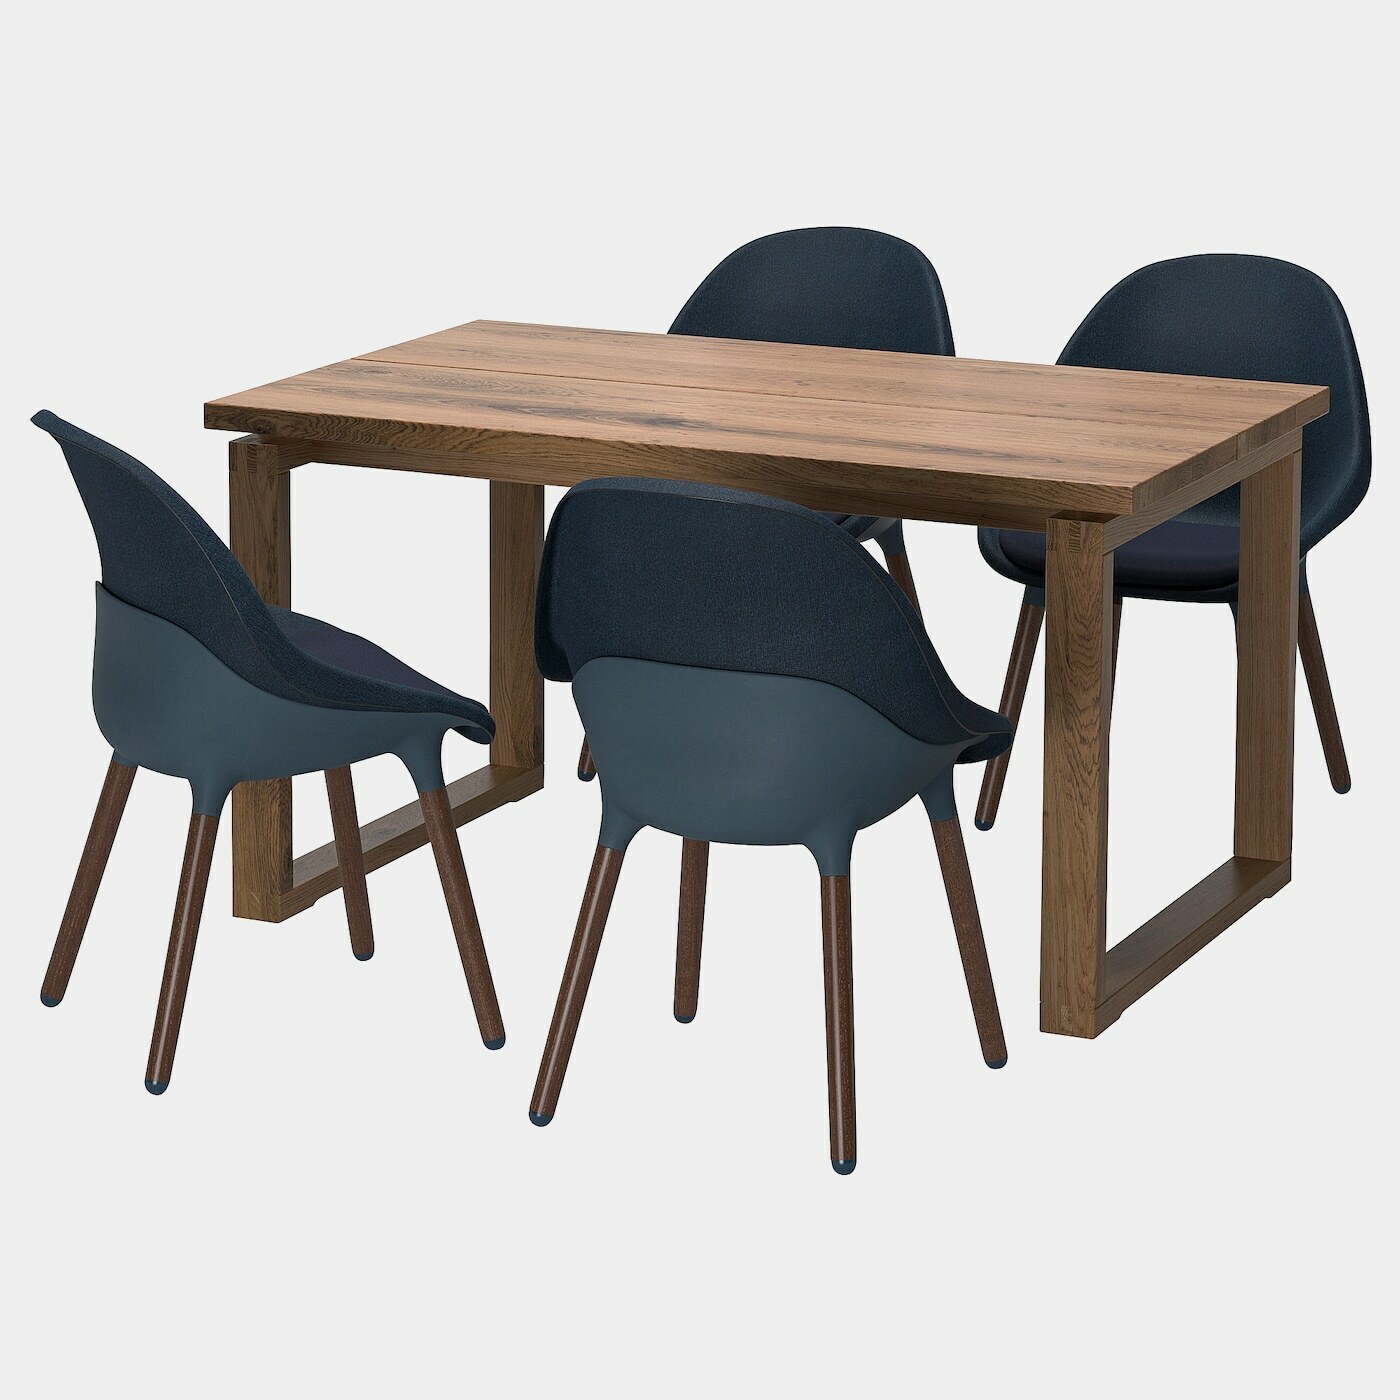 MÖRBYLÅNGA / BALTSAR Tisch und 4 Stühle  - Essplatzgruppe - Möbel Ideen für dein Zuhause von Home Trends. Möbel Trends von Social Media Influencer für dein Skandi Zuhause.